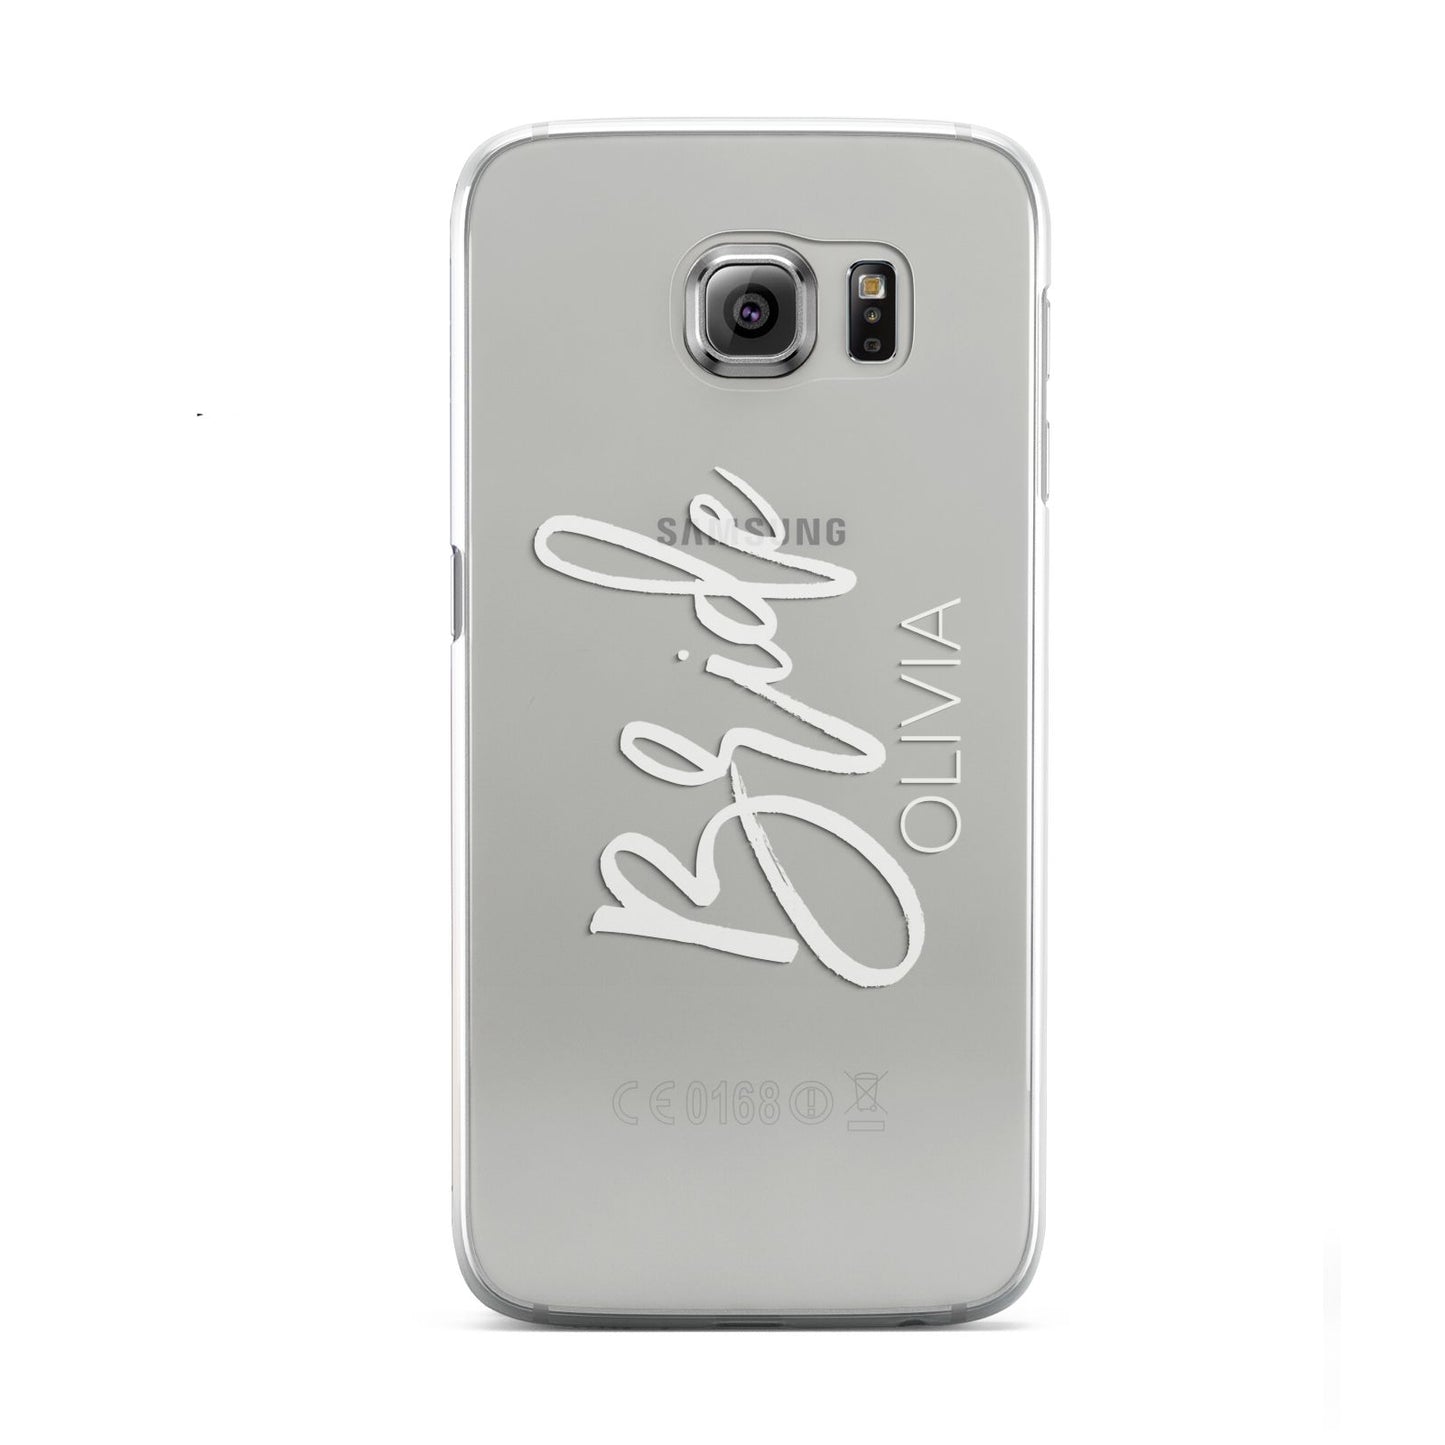 Personalised Bride Samsung Galaxy S6 Case